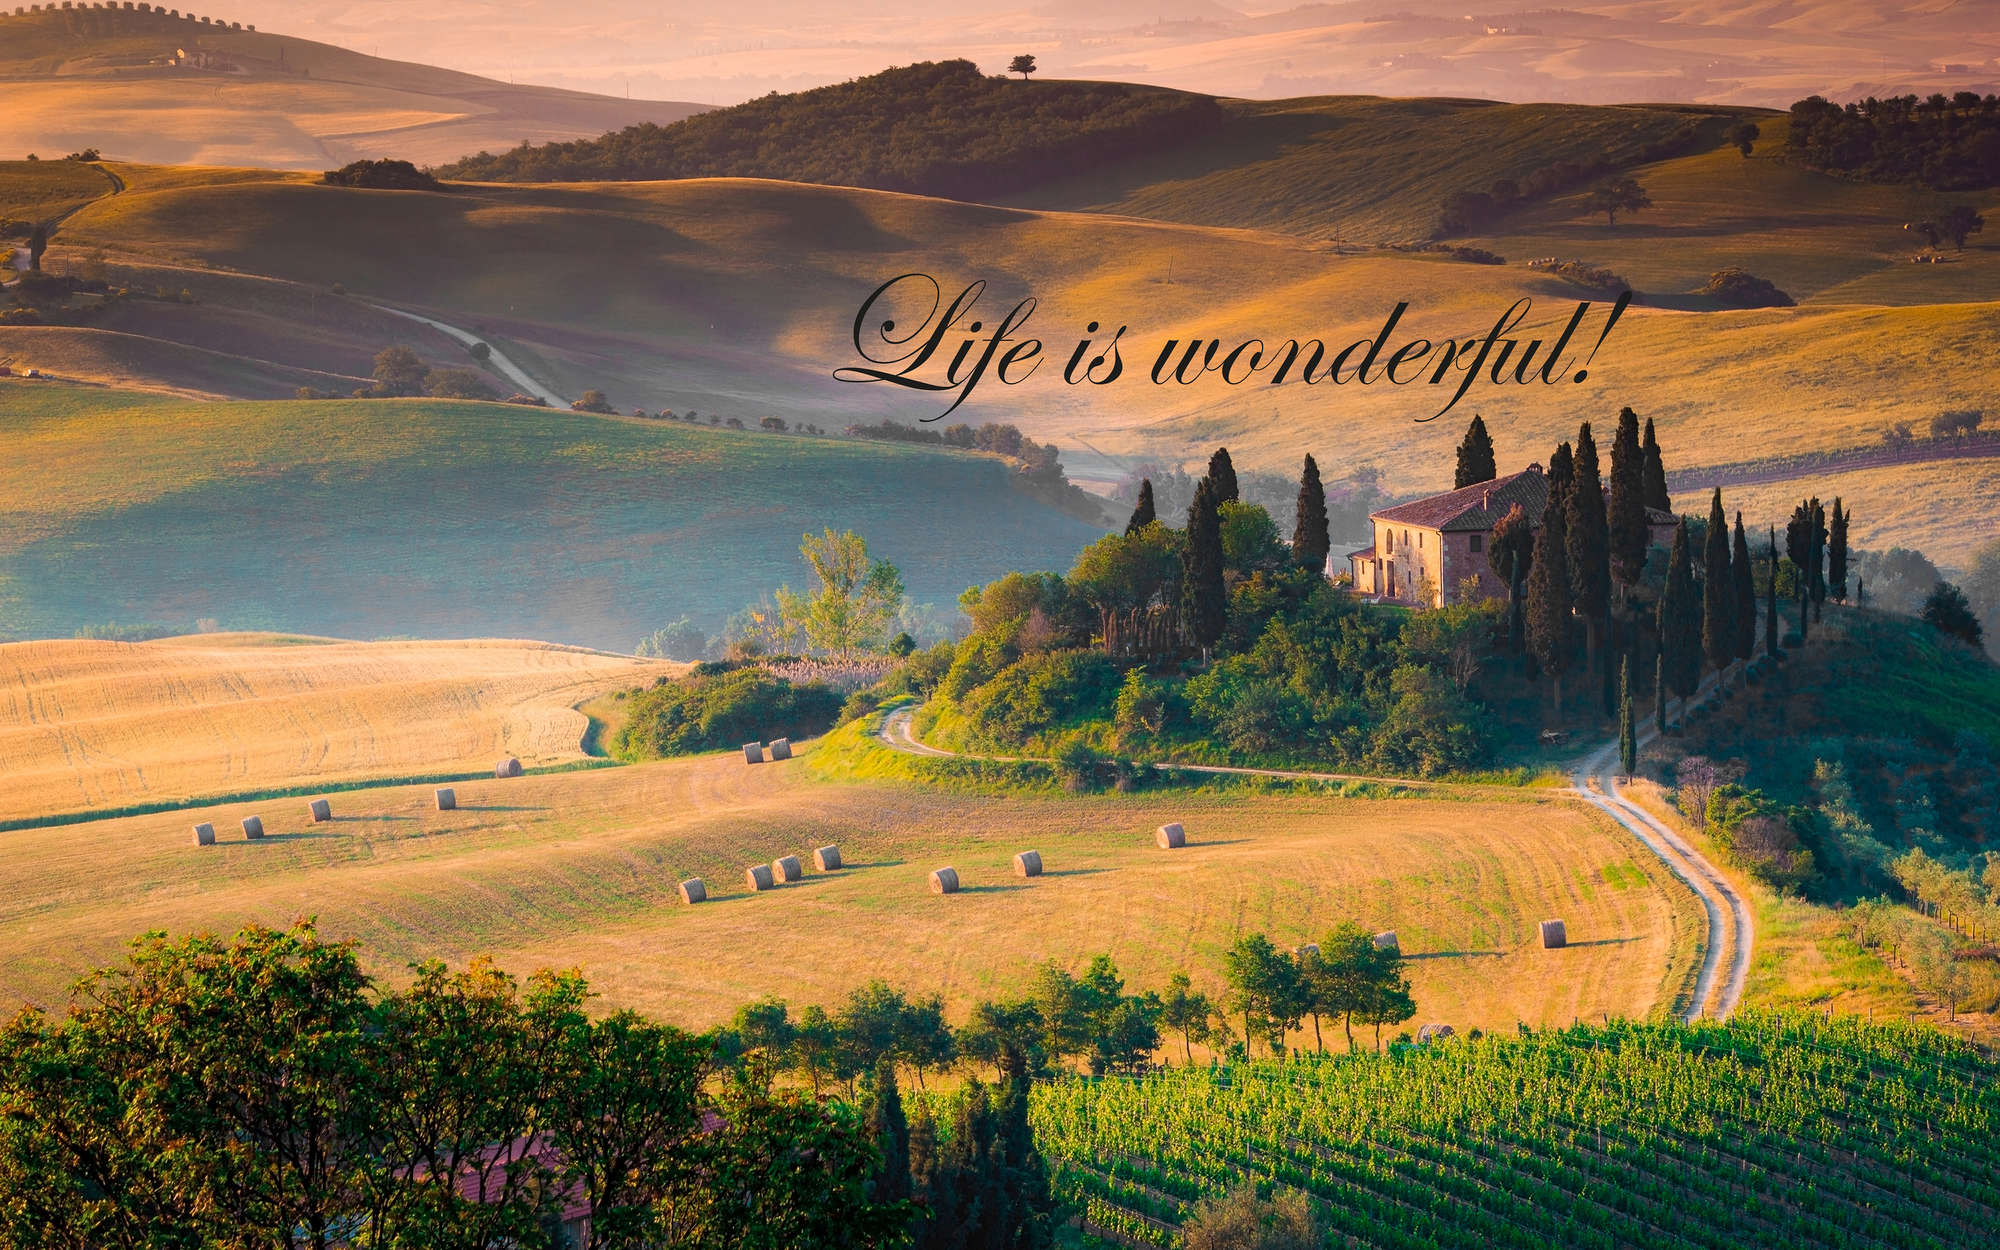             Digital behang Toscane met opschrift "Life is wonderful! - Premium glad fleece
        